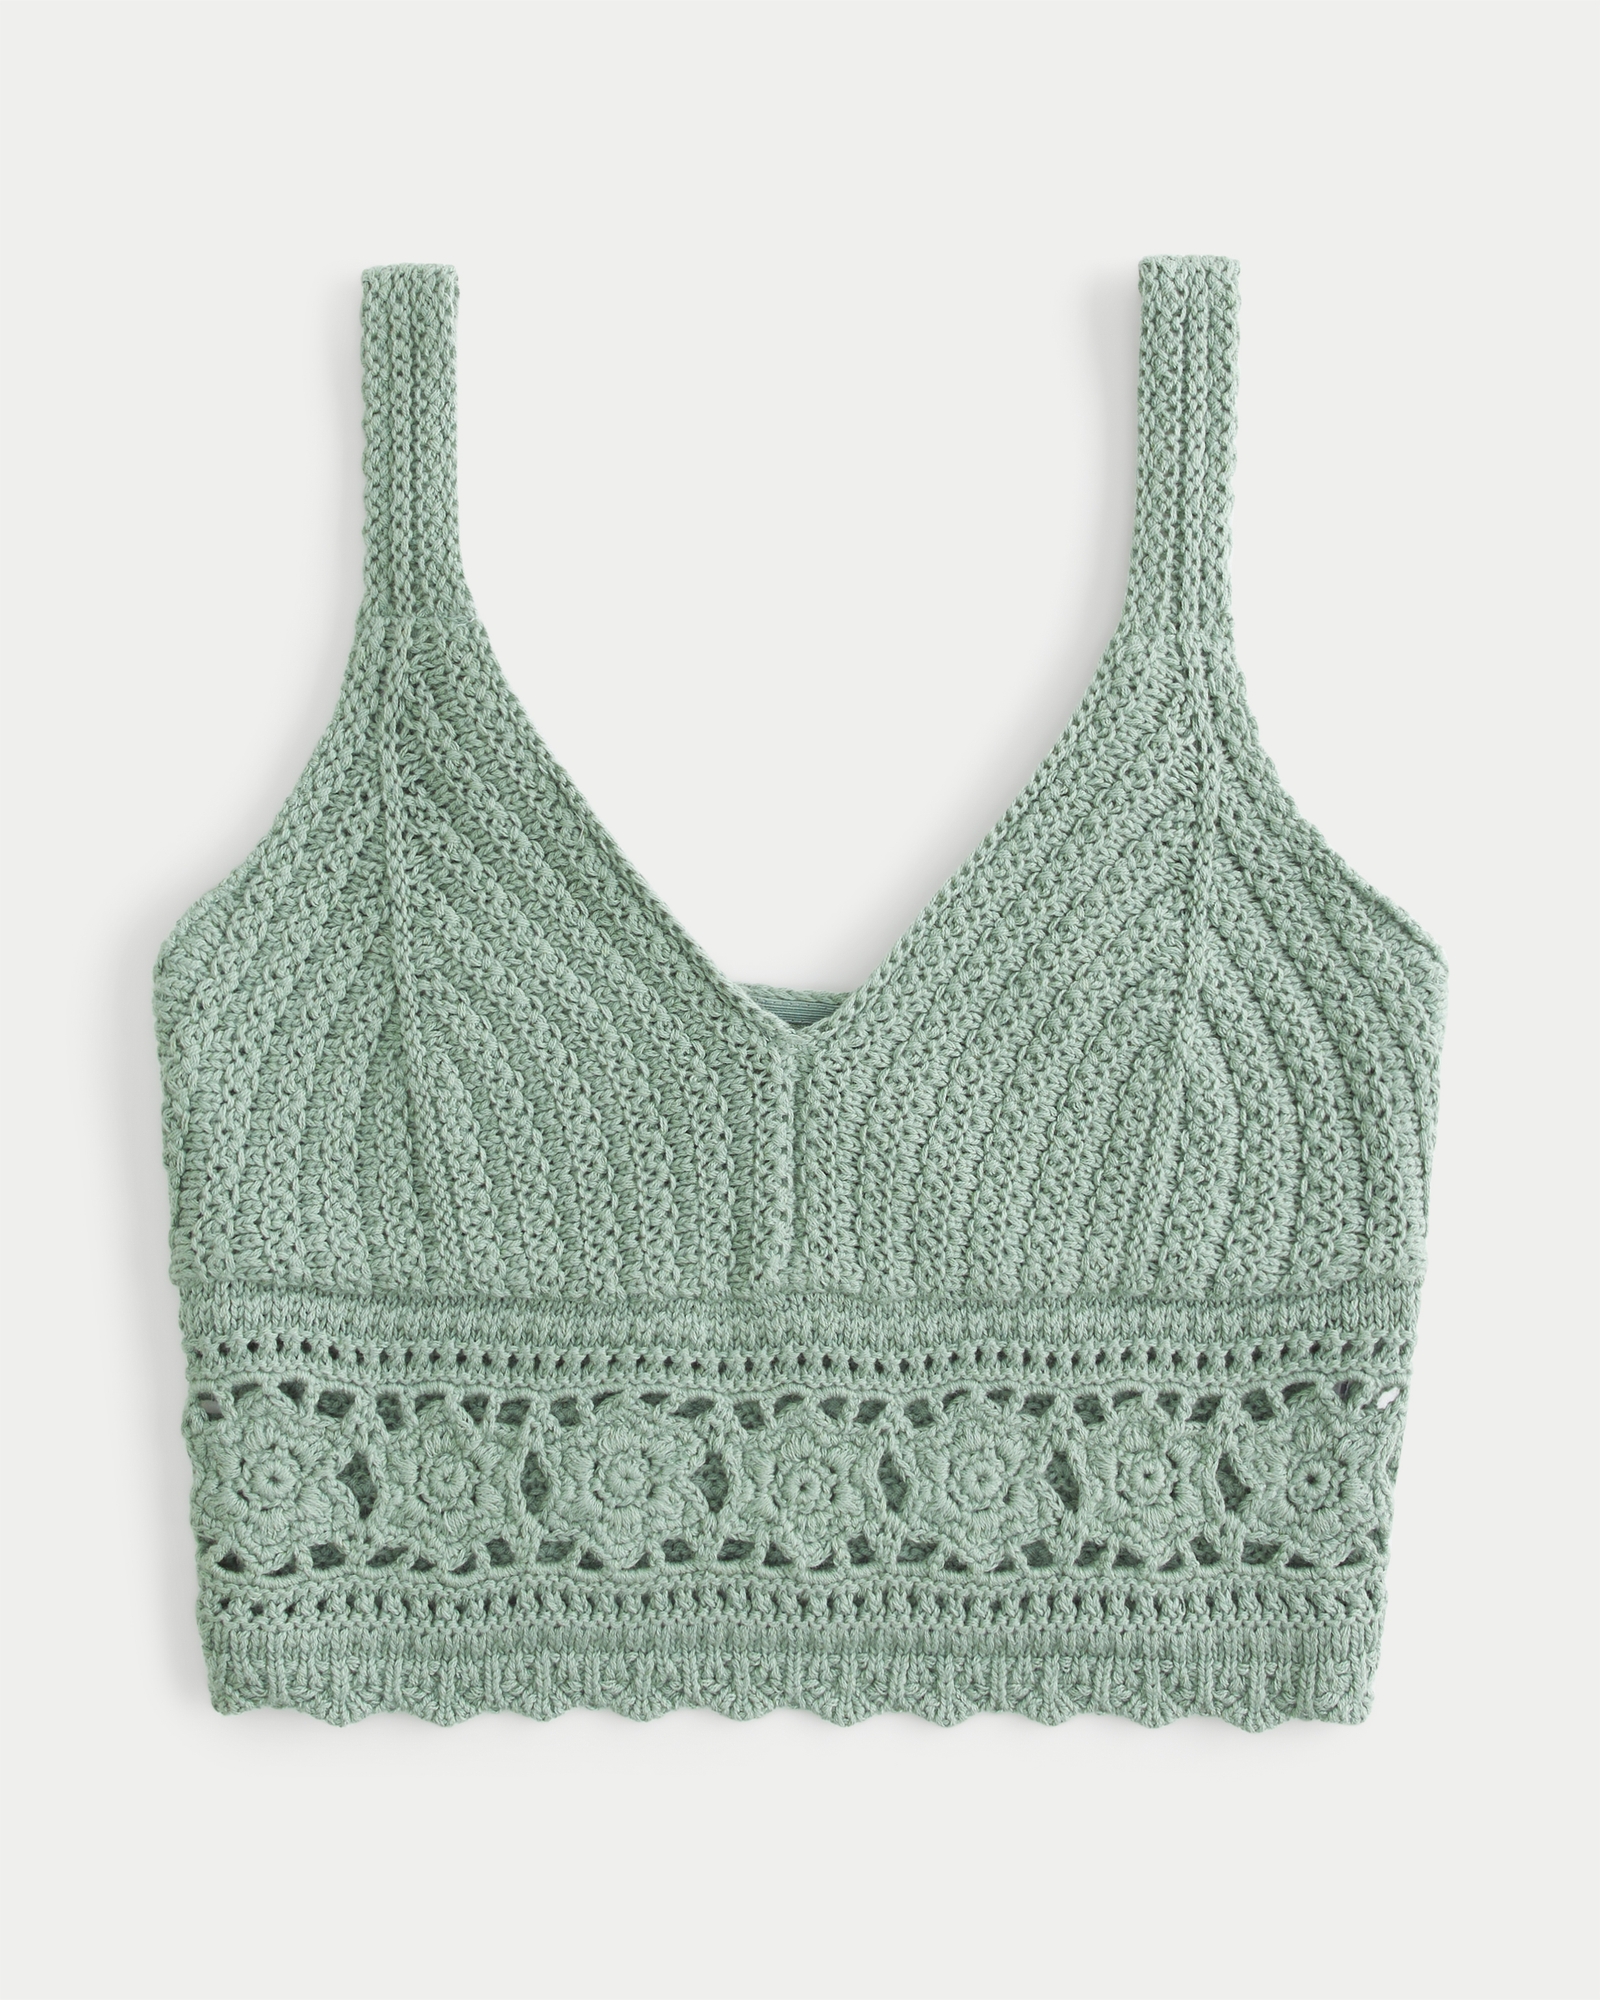 Crochet Netted Bralette, Net Top, Mesh Bra